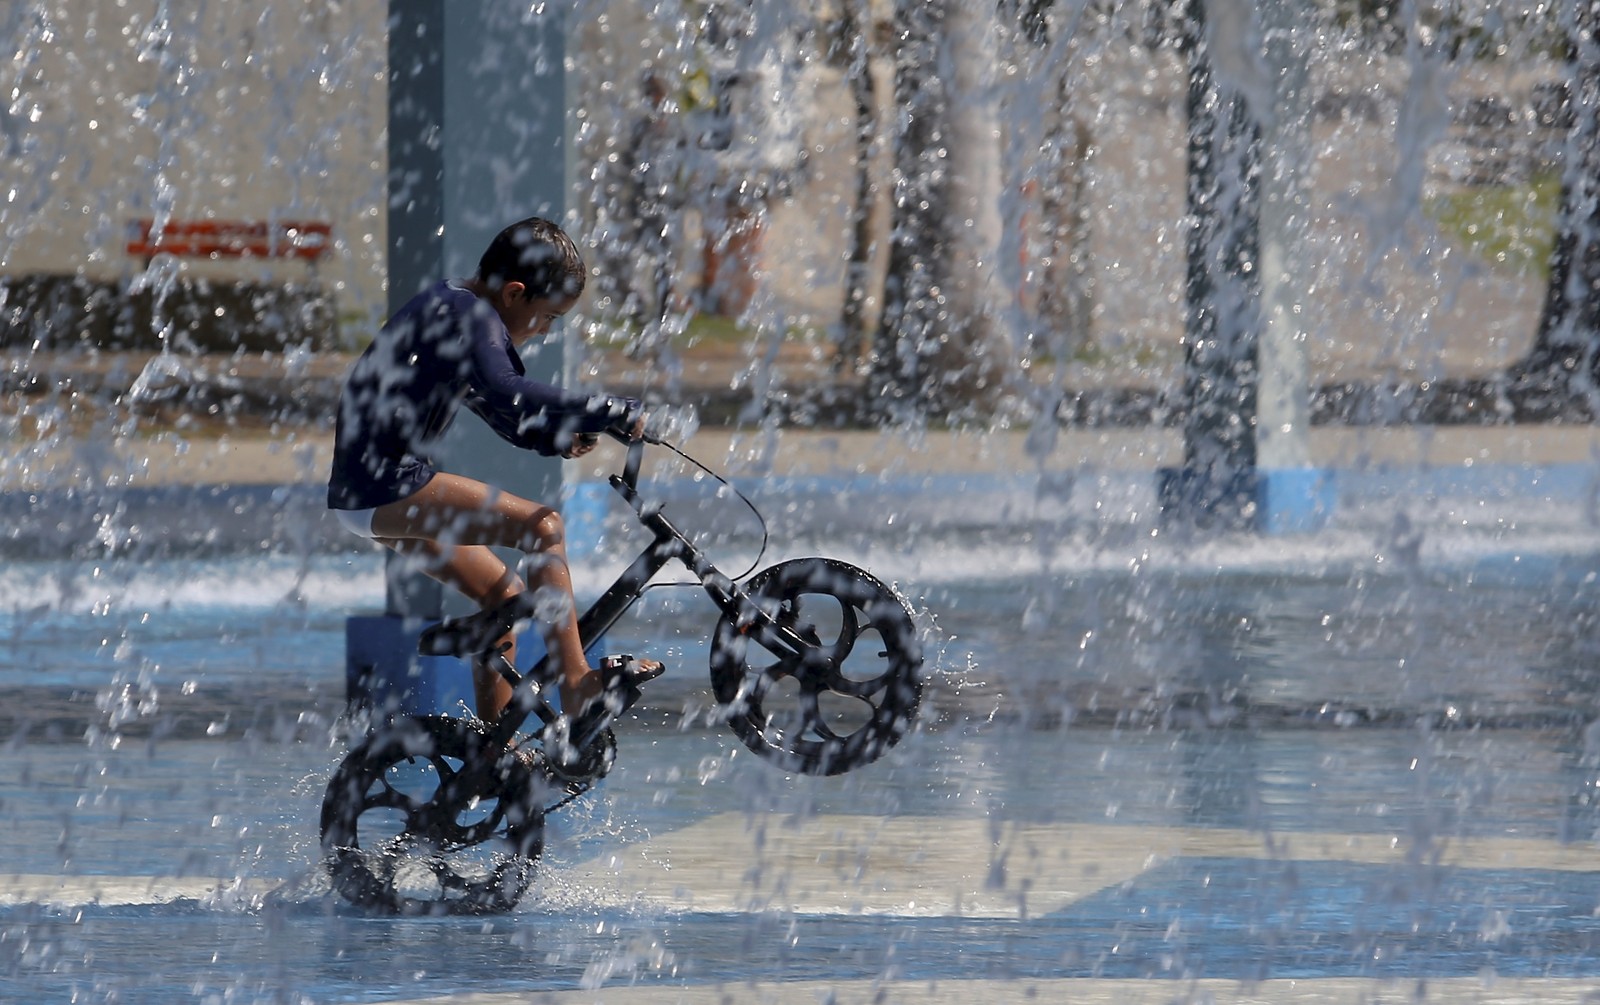 Inverno de calor recorde. No Parque de Madureira, um garoto anda de bicicleta embaixo d'água — Foto: Fabiano Rocha